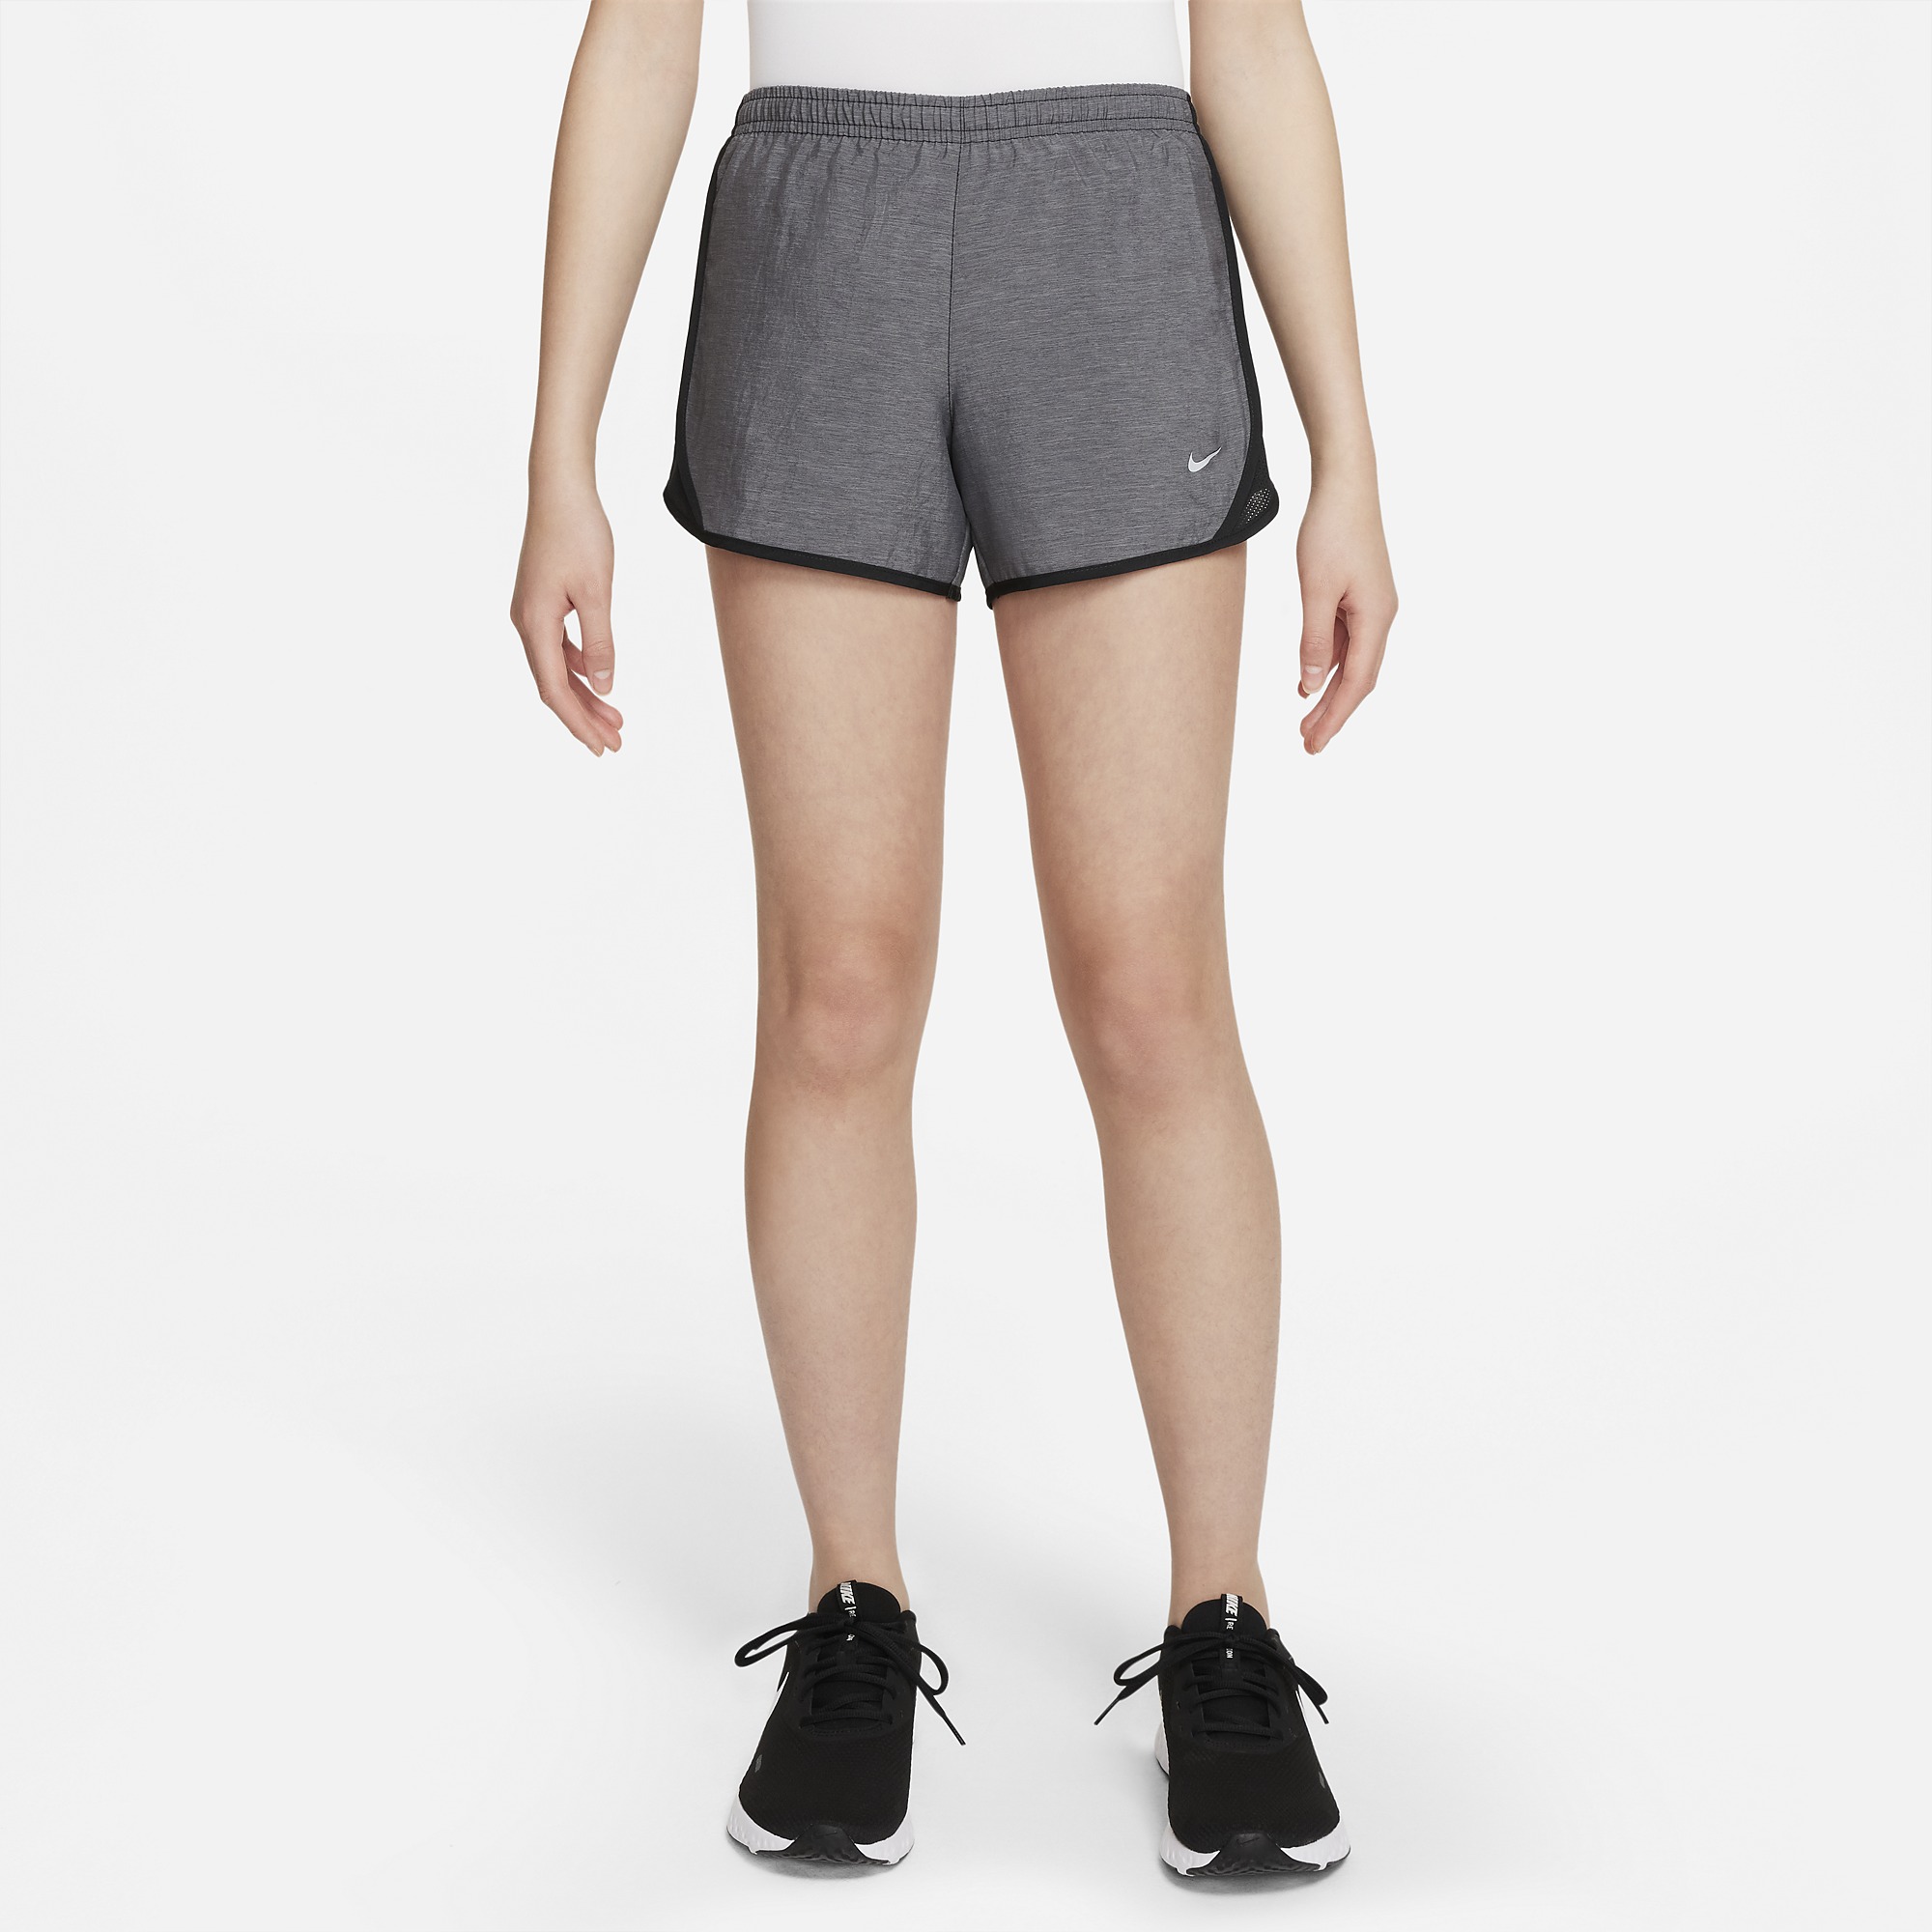 Nike Pro Compression Shorts Womens Size Medium Gray Heather Athletic  Training